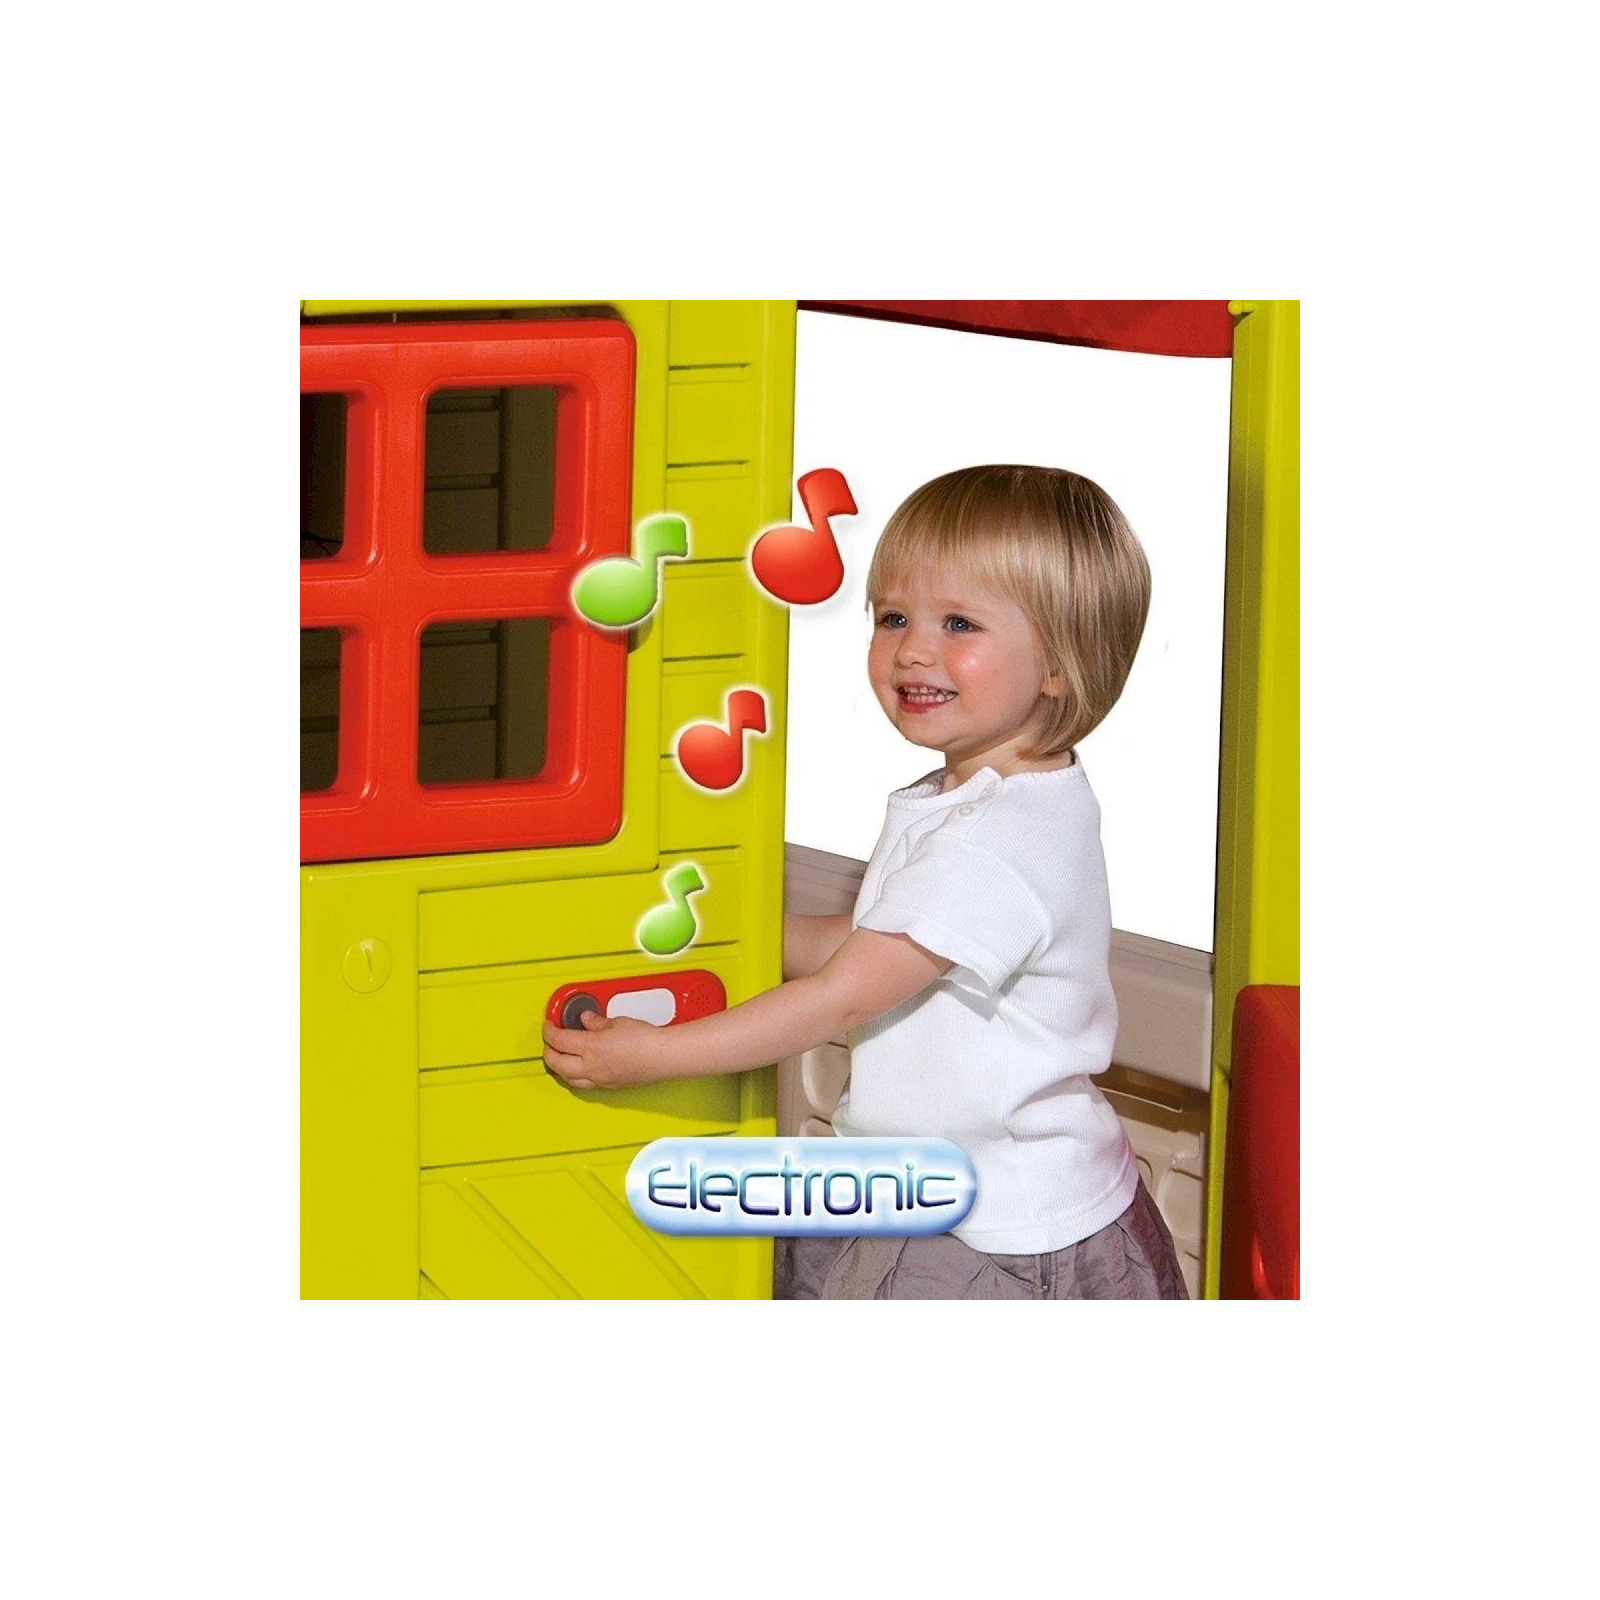 Игровой домик Smoby Садовый домик с кухней-барбекю и звонком (310300) изображение 5